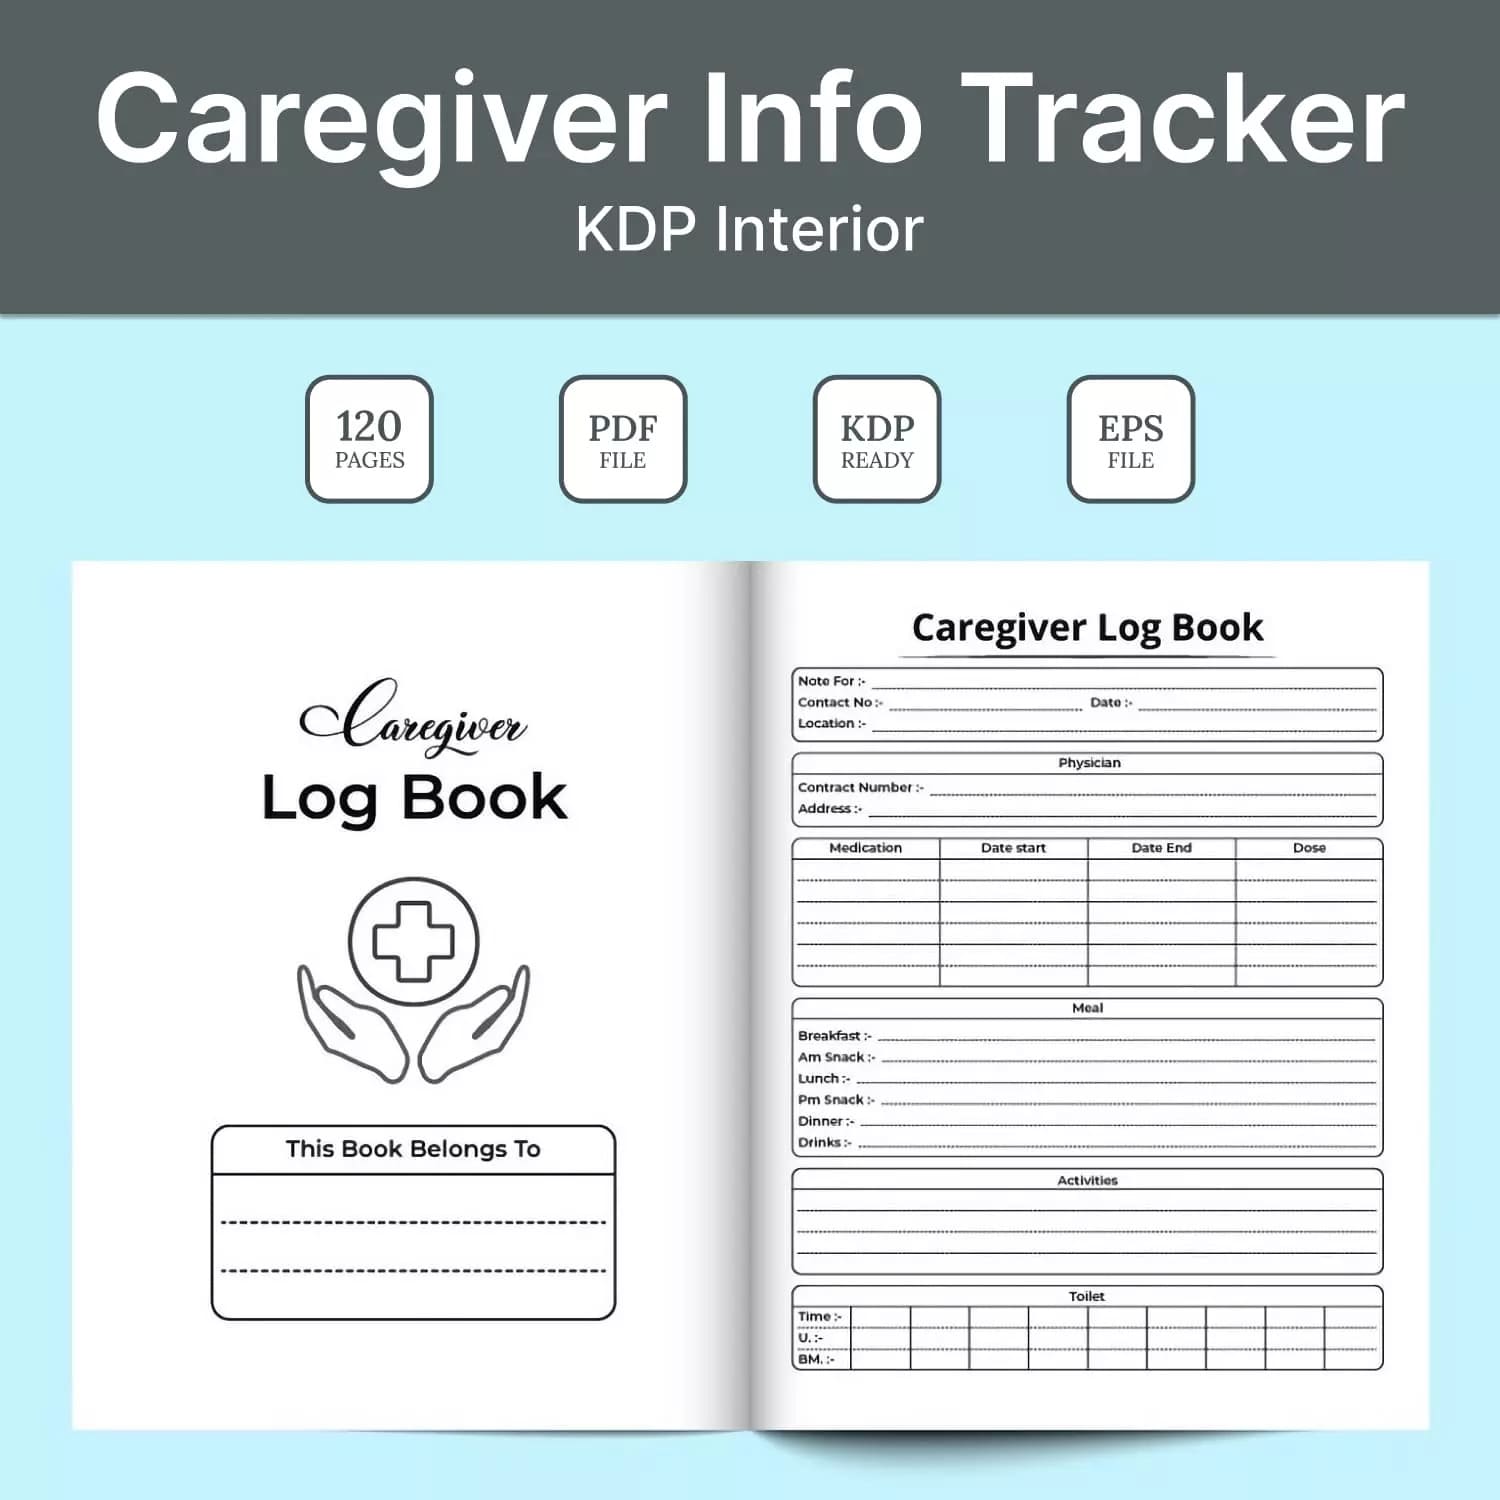 Caregiver Info Tracker Kdp Interior Preview image.